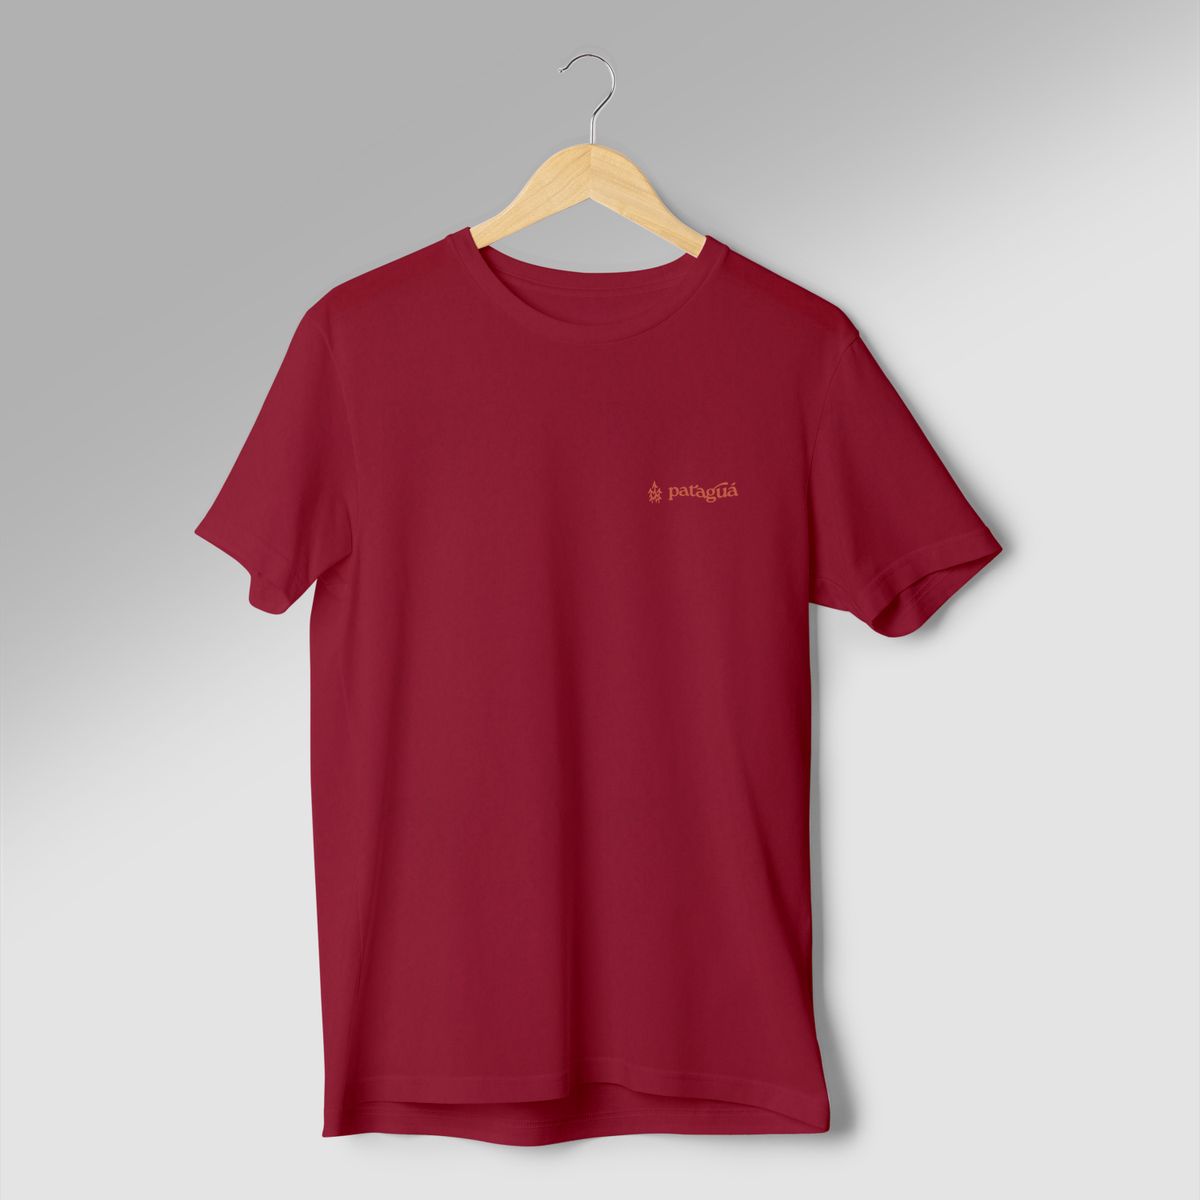 Nome do produto: Camiseta Quality - Pataguá